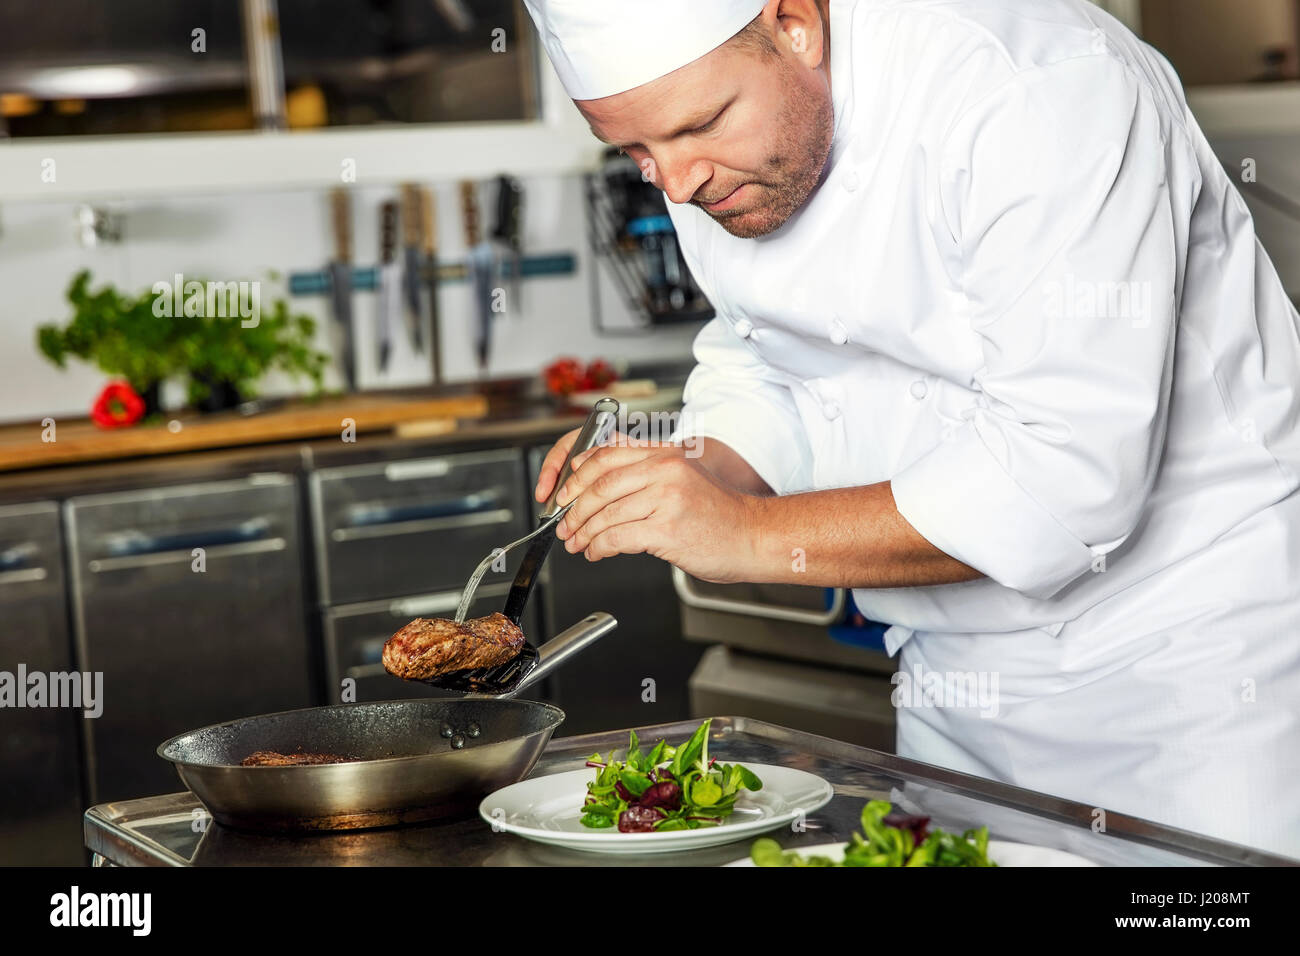 Focused chef prepares steak dish at gourmet restaurant Stock Photo